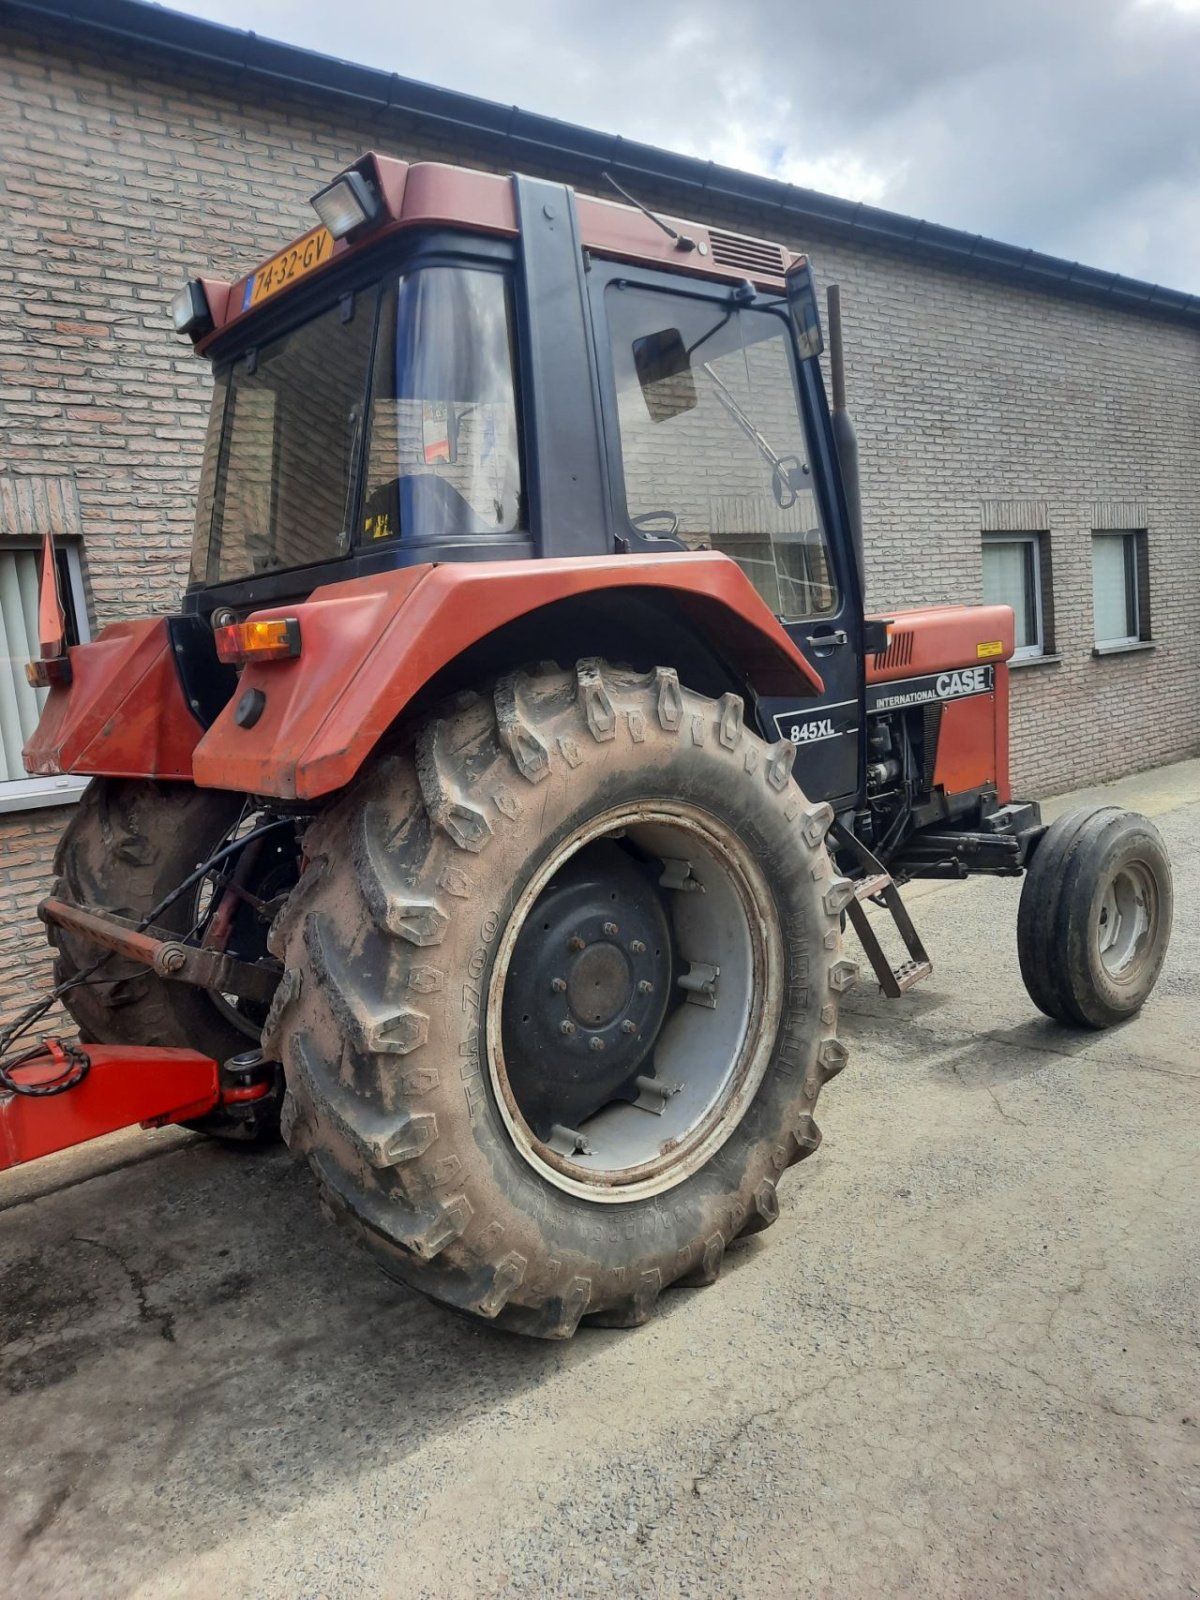 Traktor des Typs Case IH 845 xl, Gebrauchtmaschine in Essen (Bild 2)